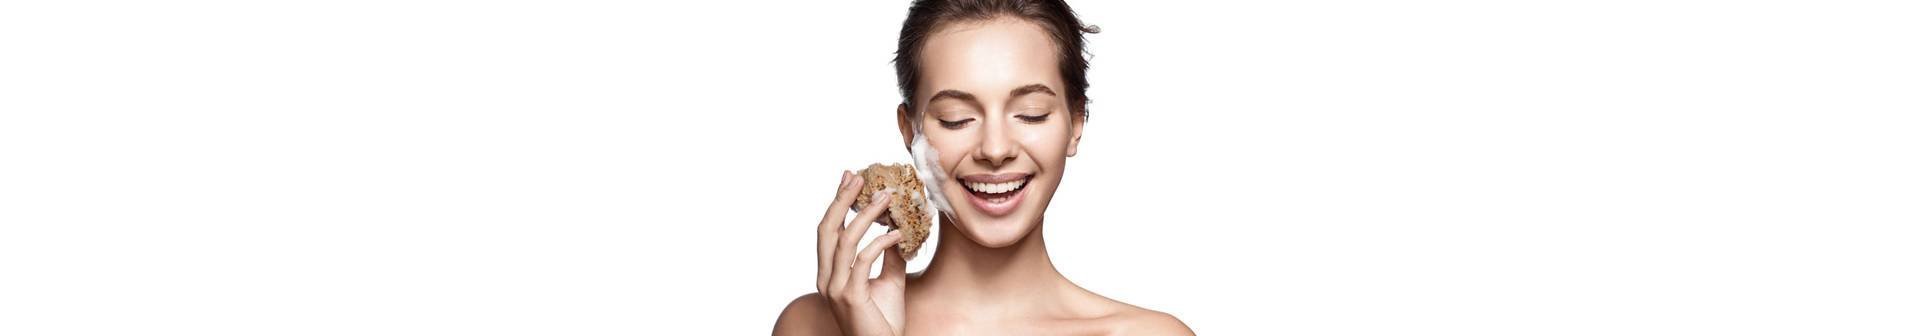 Als je last hebt van puistjes, dan is een goede gezichtsreiniging om acne te bestrijden een must. Ontdek in dit artikel welk product bij jou past en pak je probleem aan.